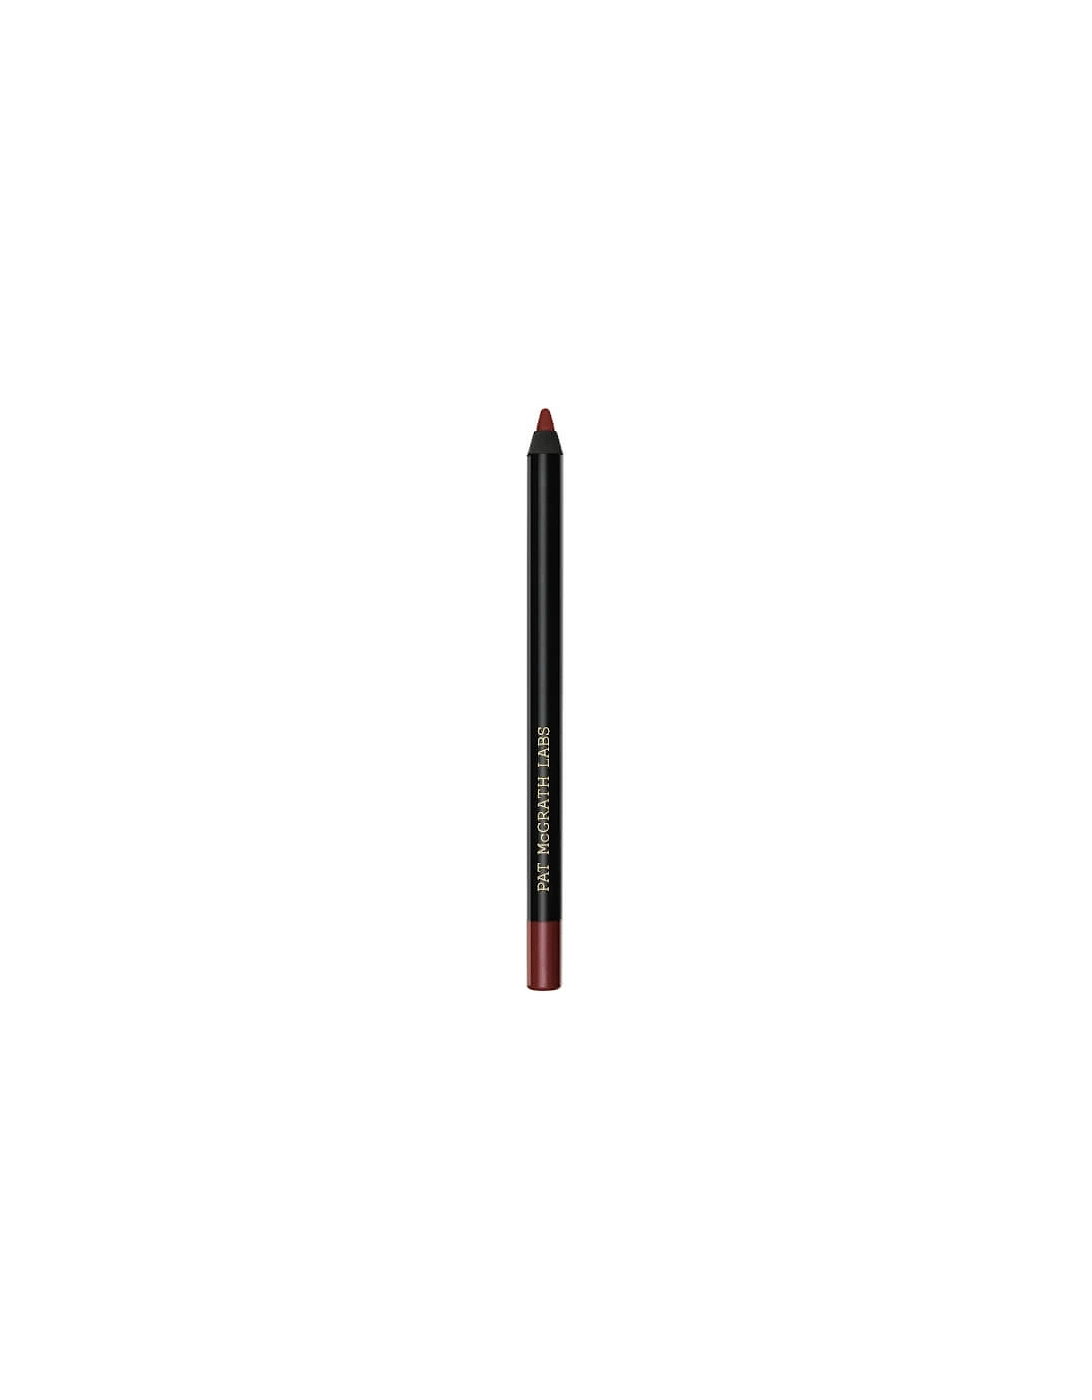 PermaGel Ultra Lip Pencil - Suburbia, 2 of 1